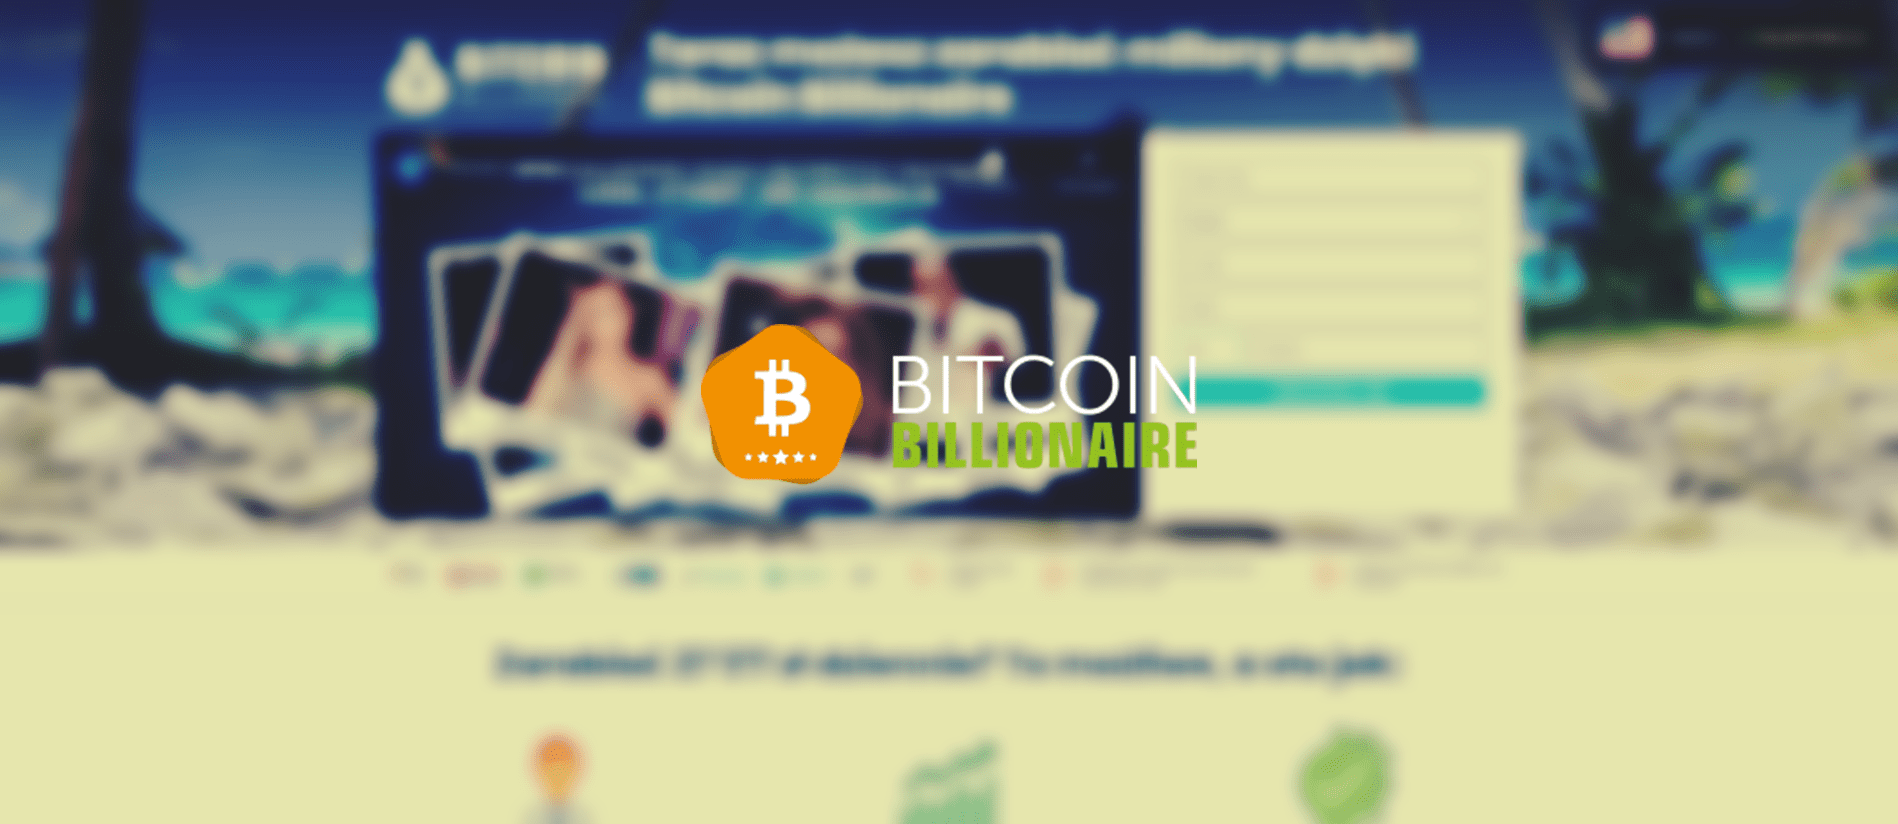 Bitcoin Billionaire - Logowanie, Rejestracja i Opinia. Sprawdź czy platforma jest bezpieczna i czy warto na niej inwestować.